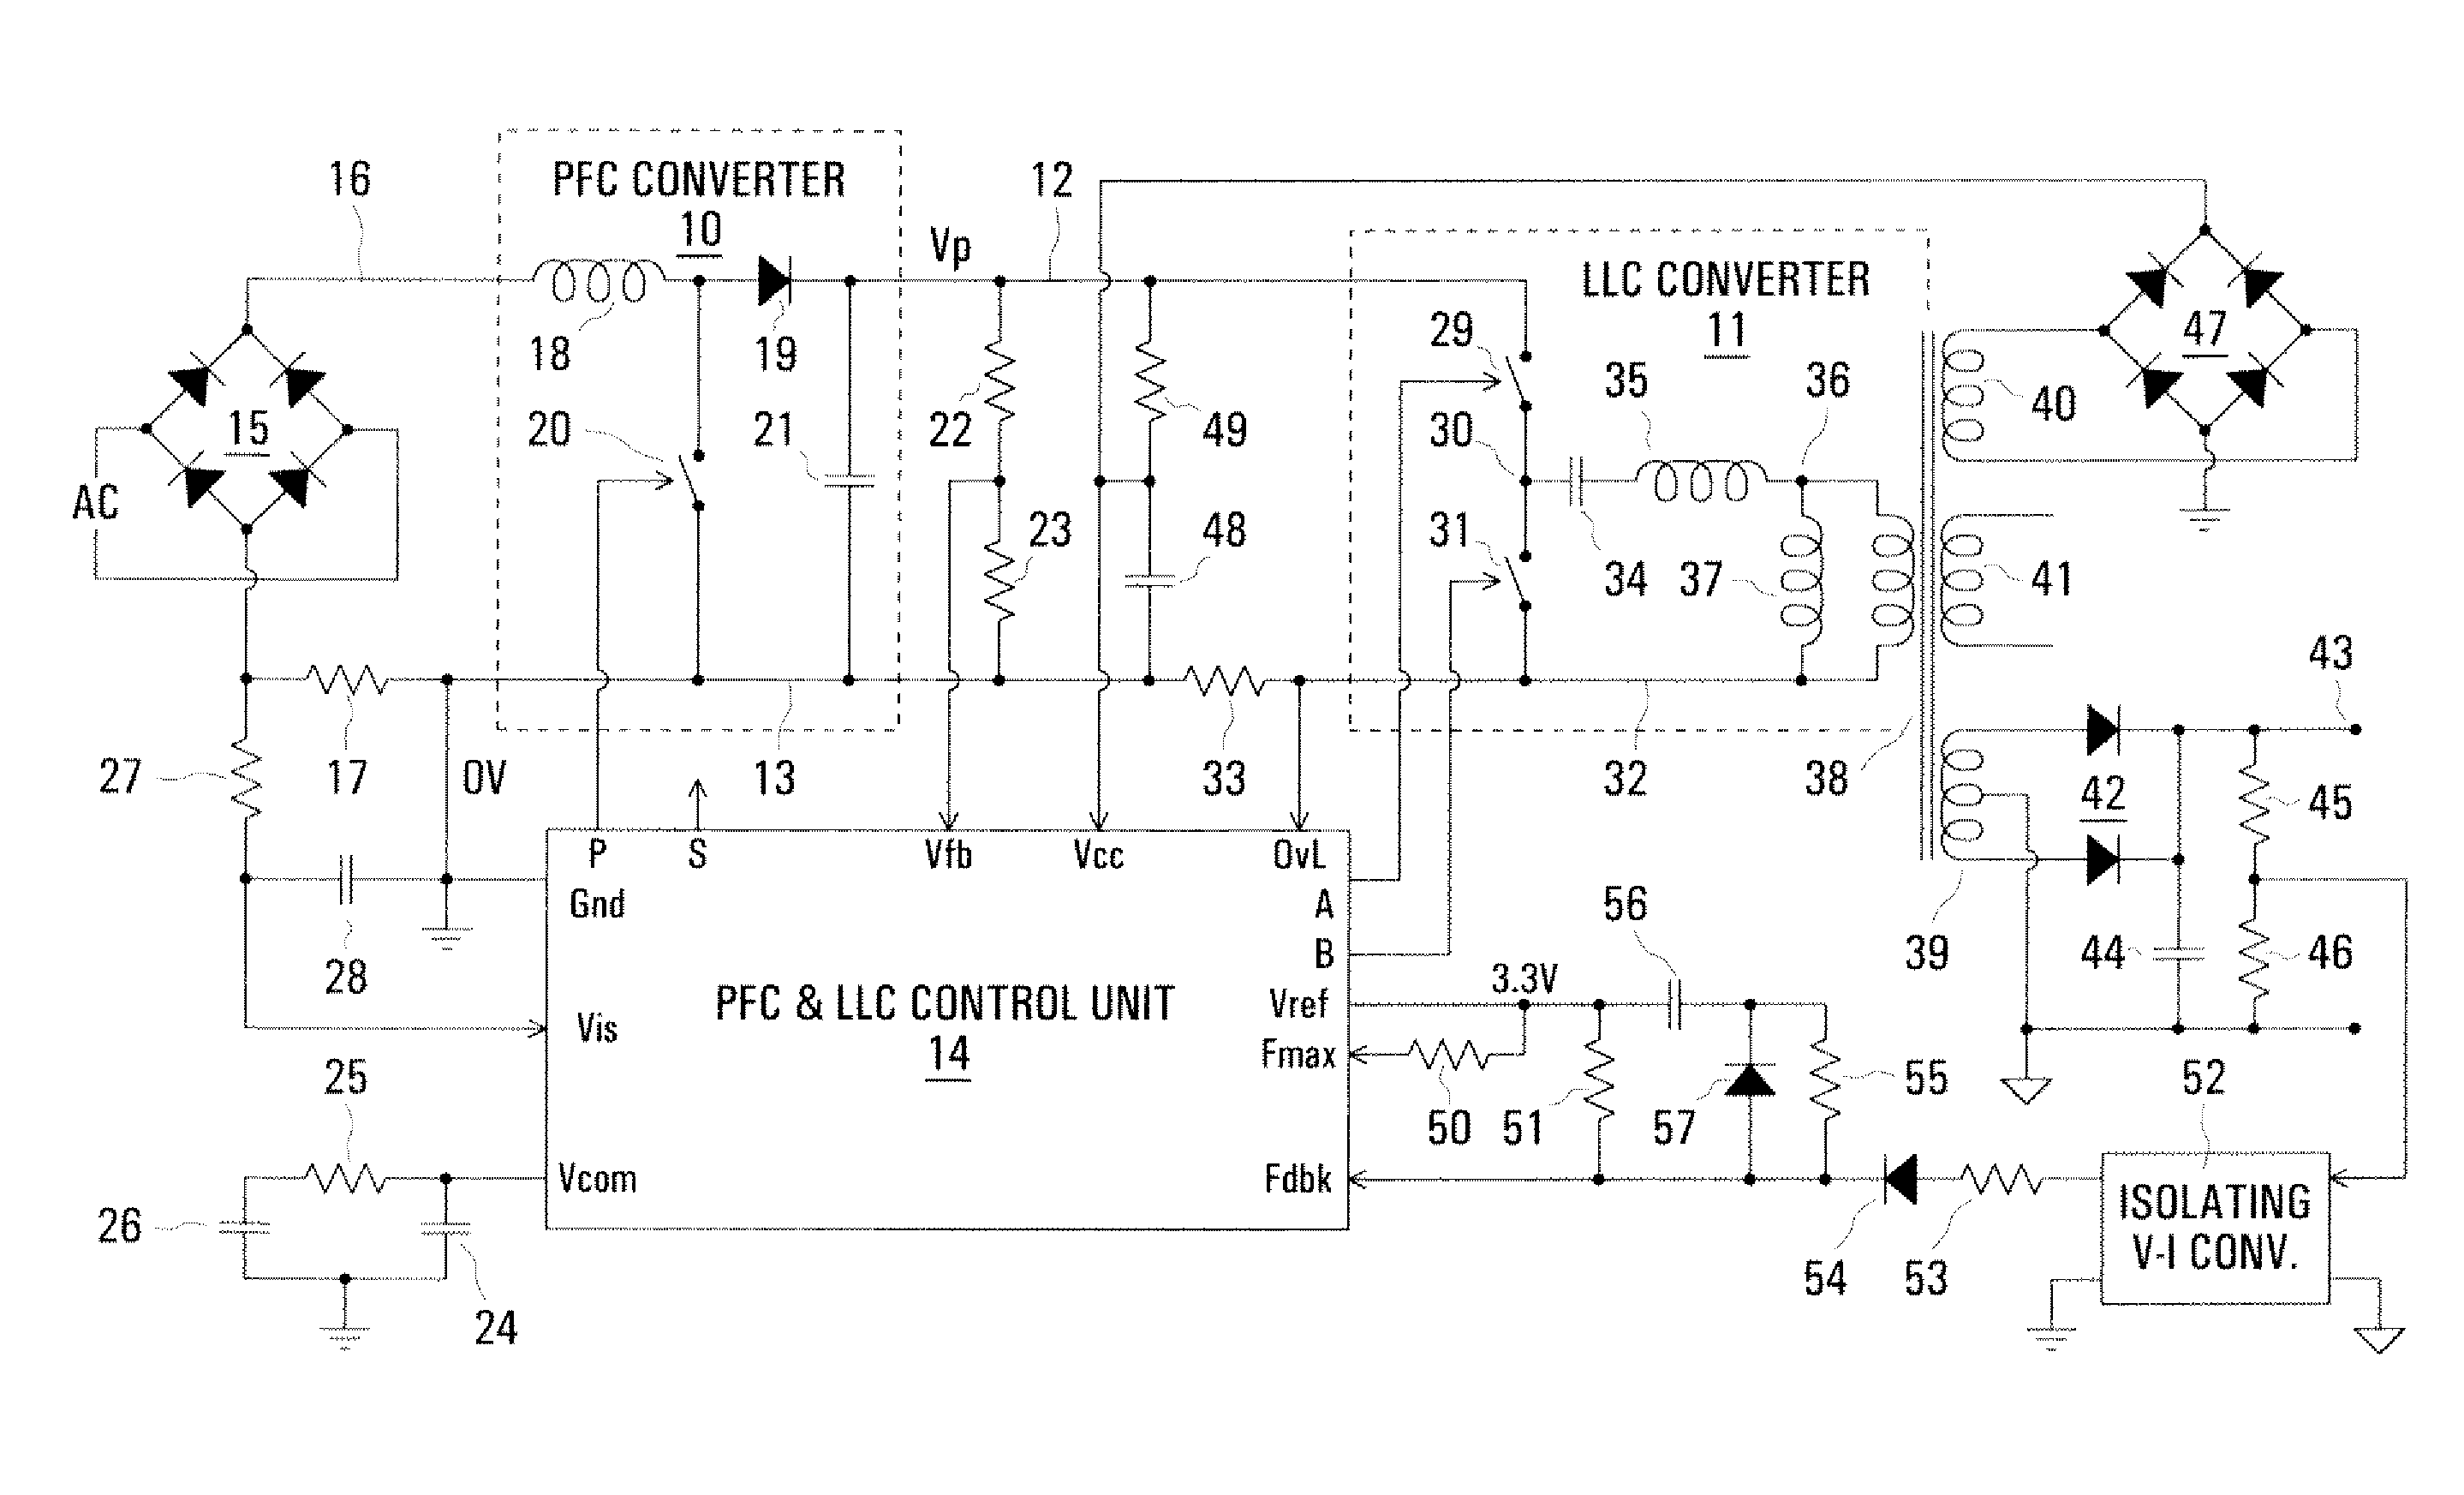 Control arrangement for a pfc power converter